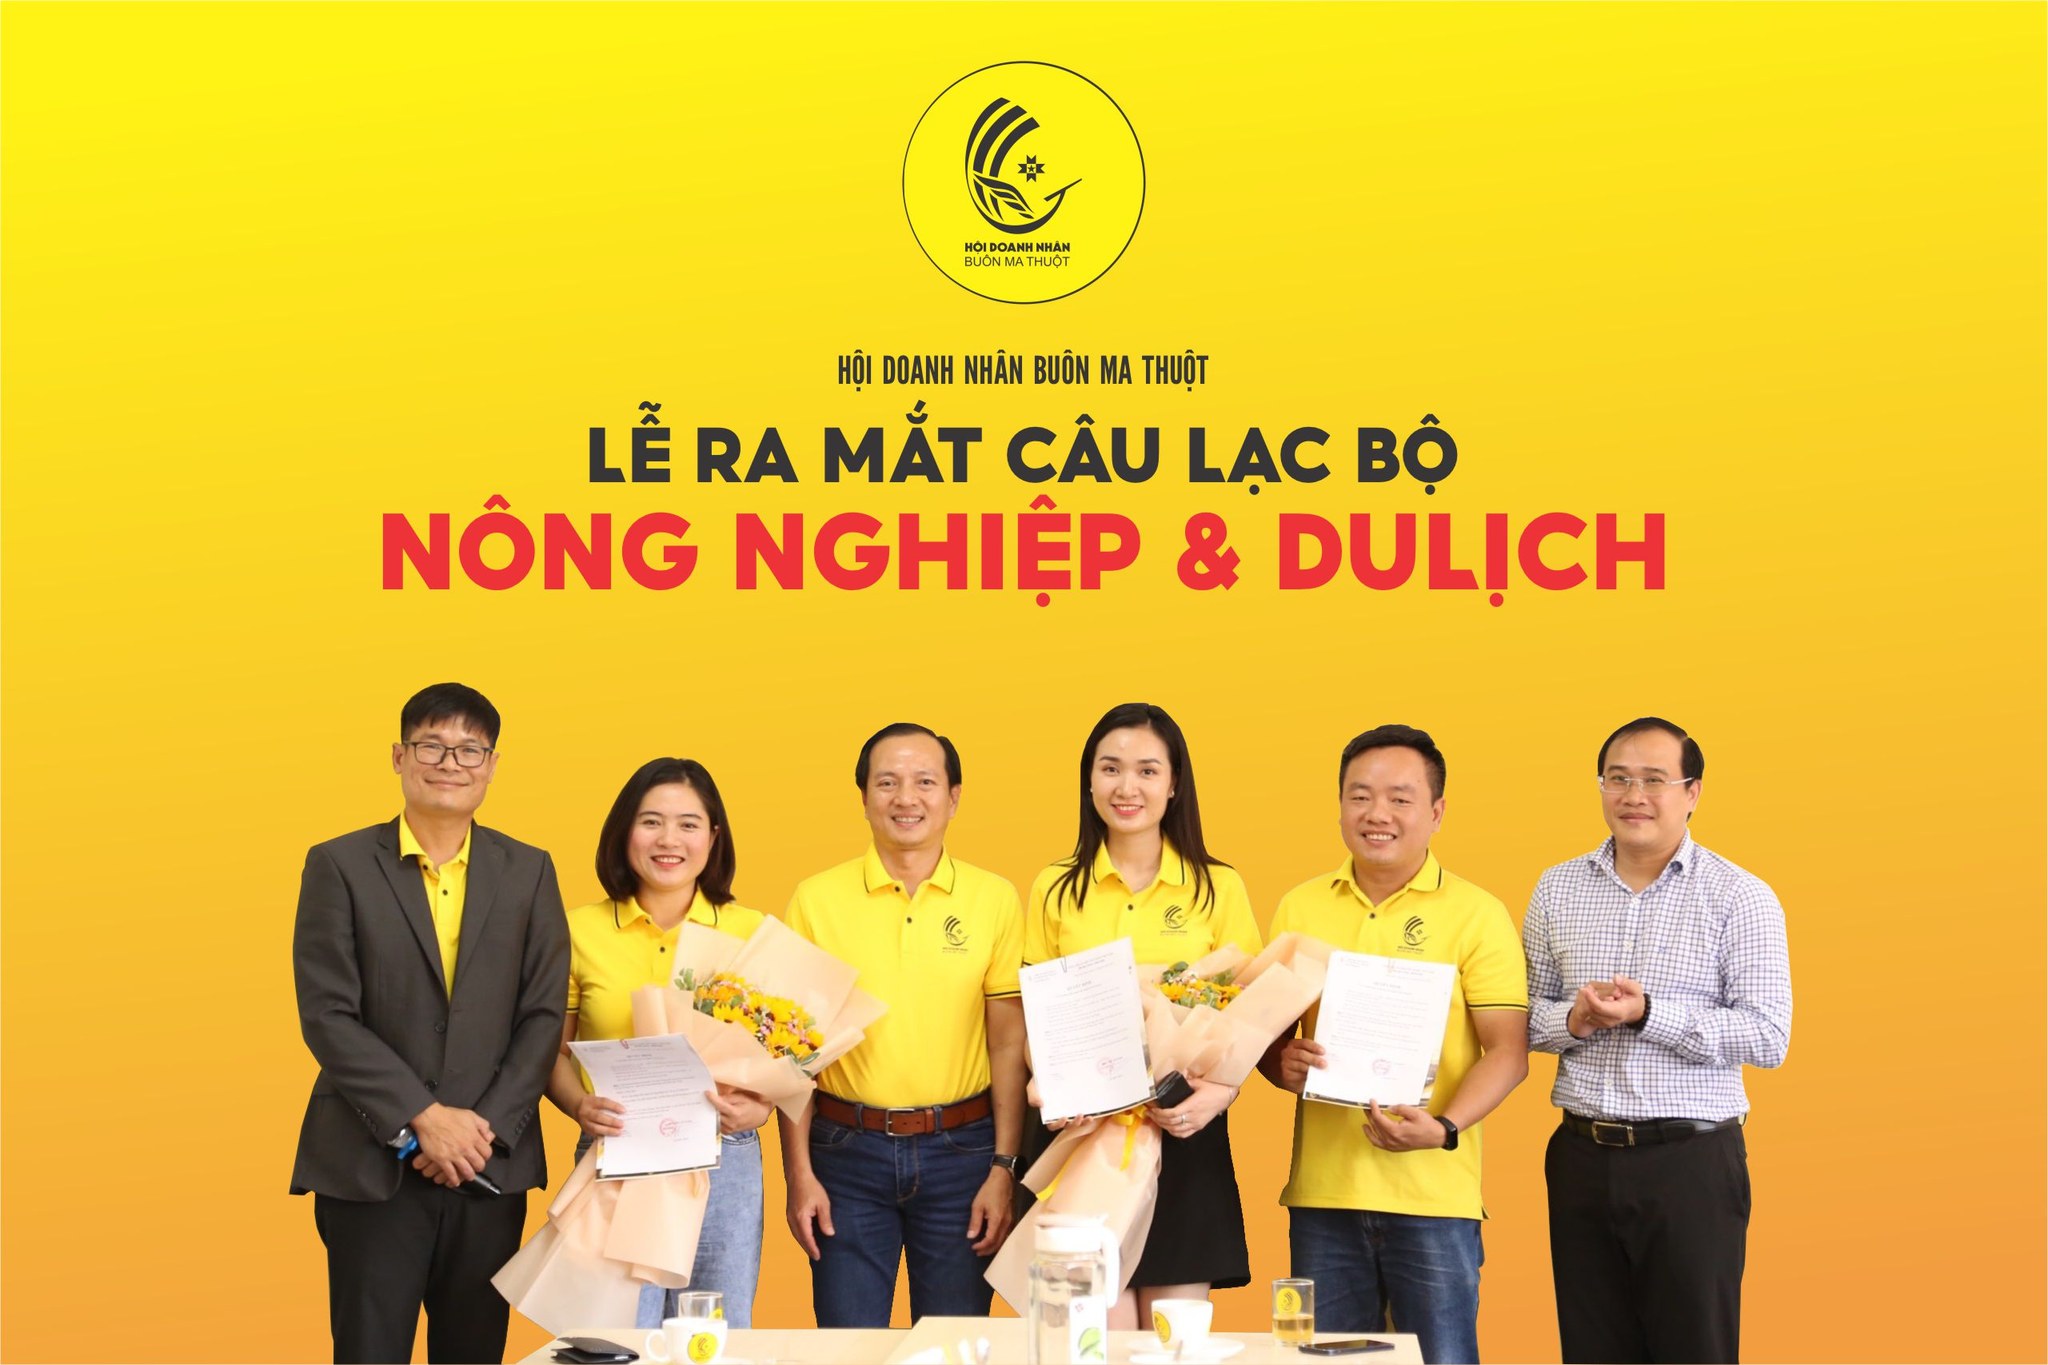 Đắk Lắk có 2 doanh nhân xuất sắc được trao tặng danh hiệu “Doanh nhân Việt Nam tiêu biểu” năm 2022